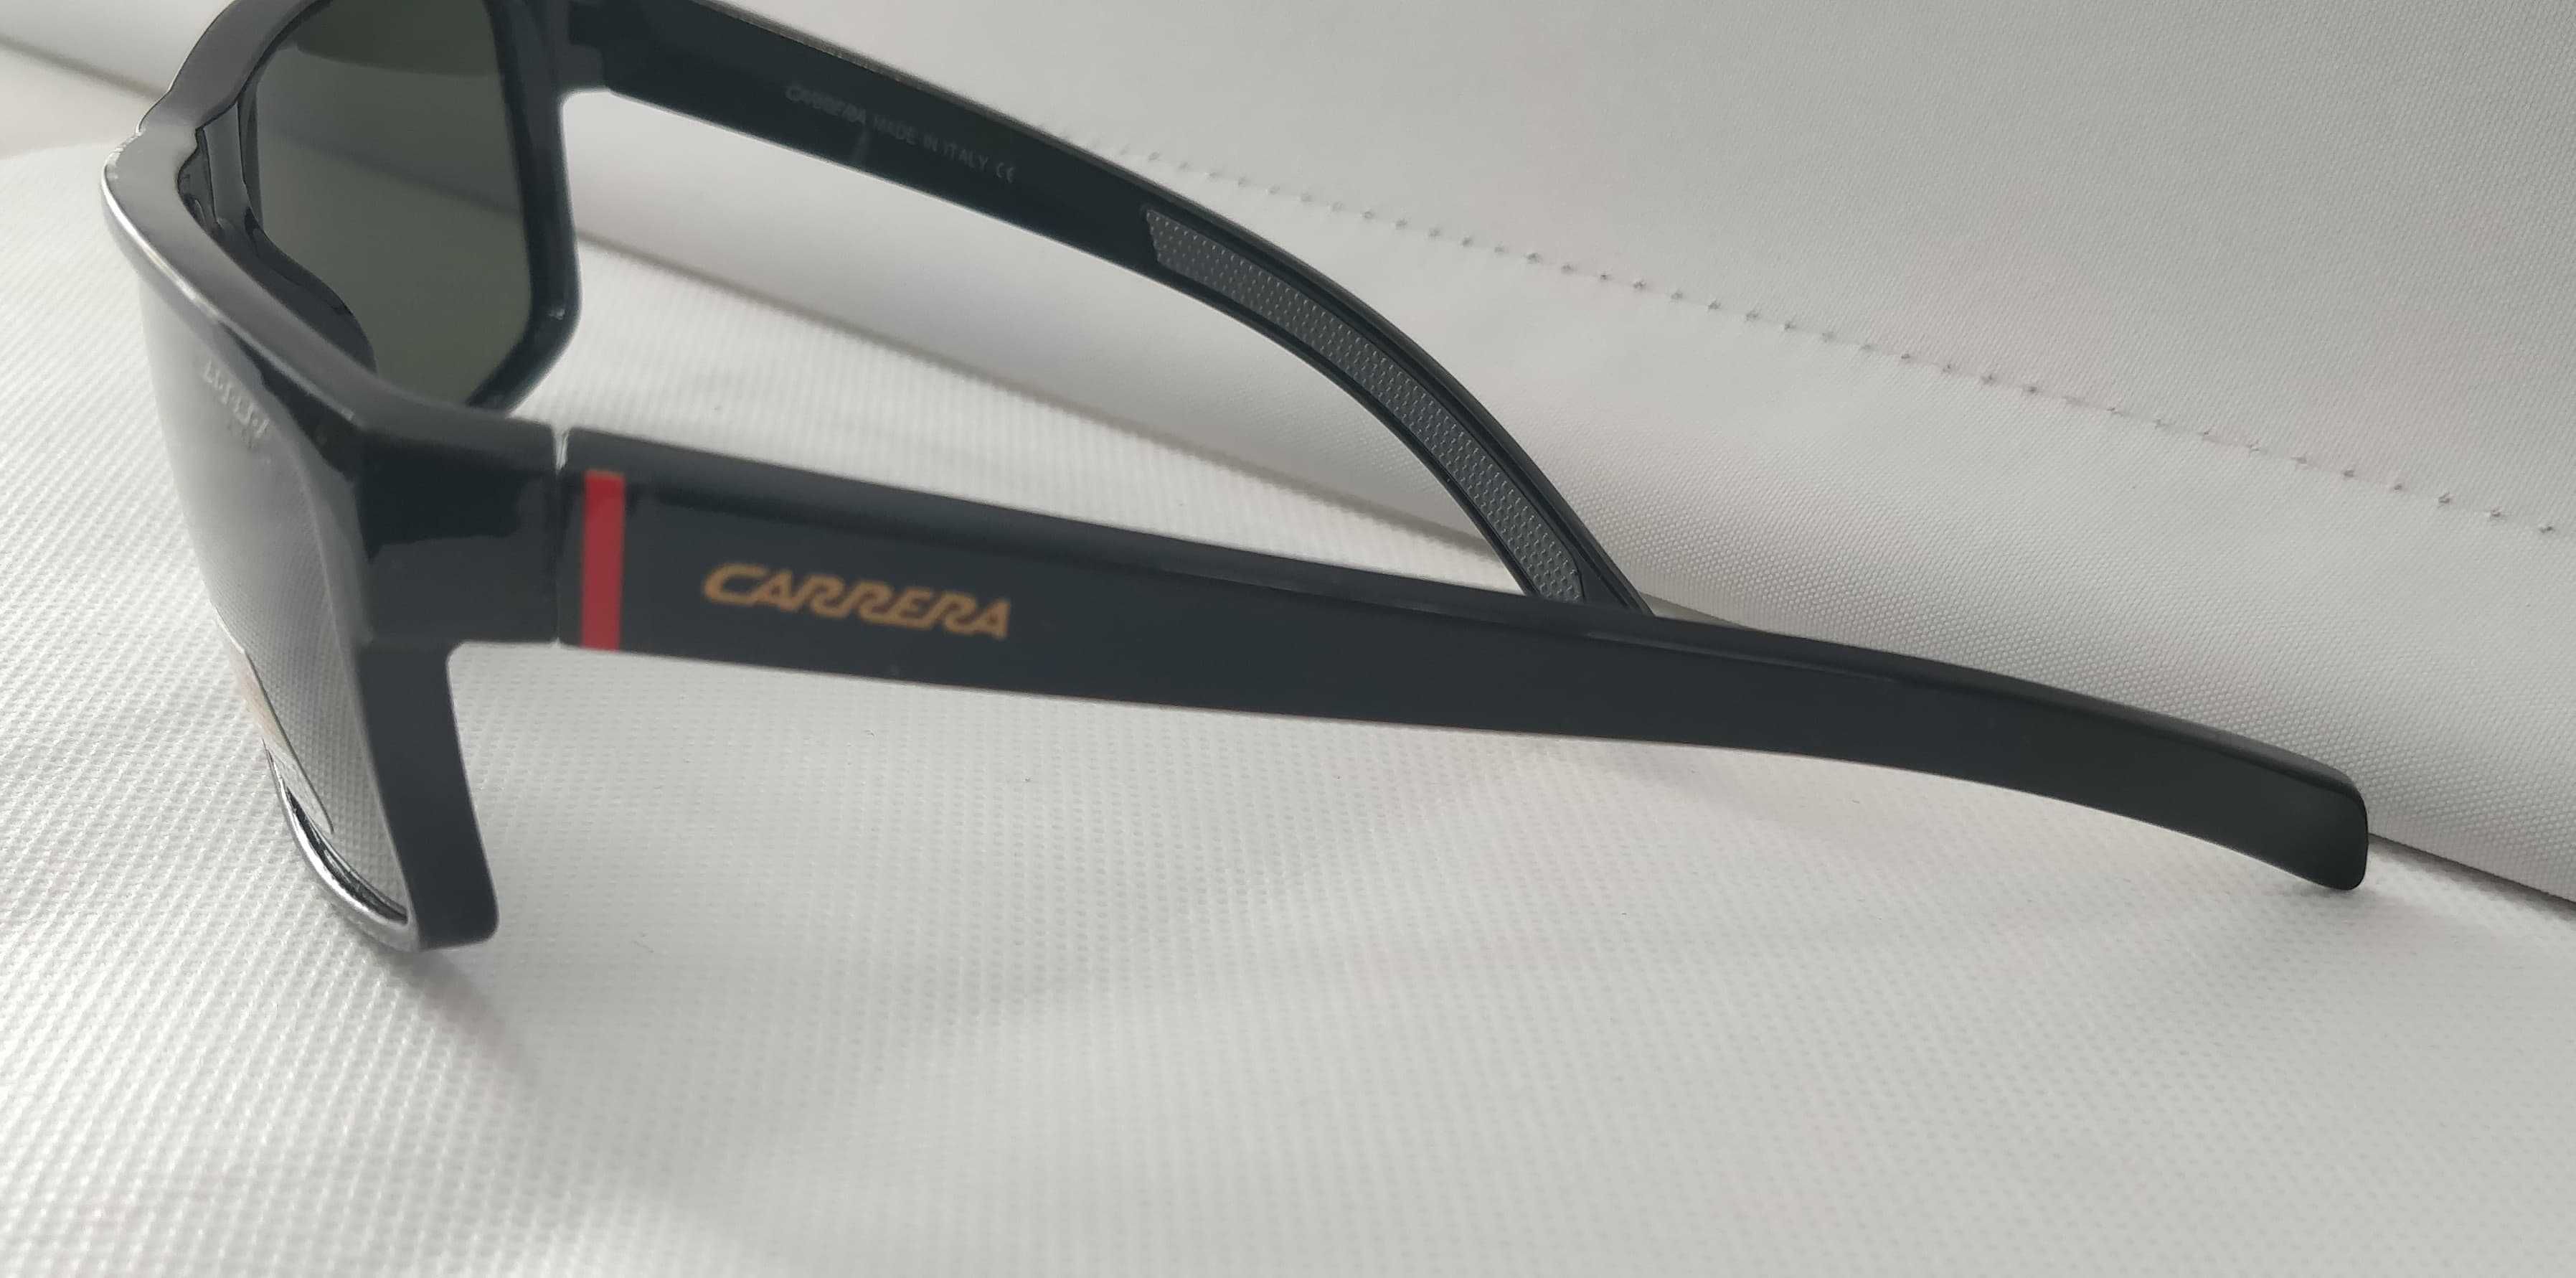 Ochelari de soare Carrera model 3, polarizati